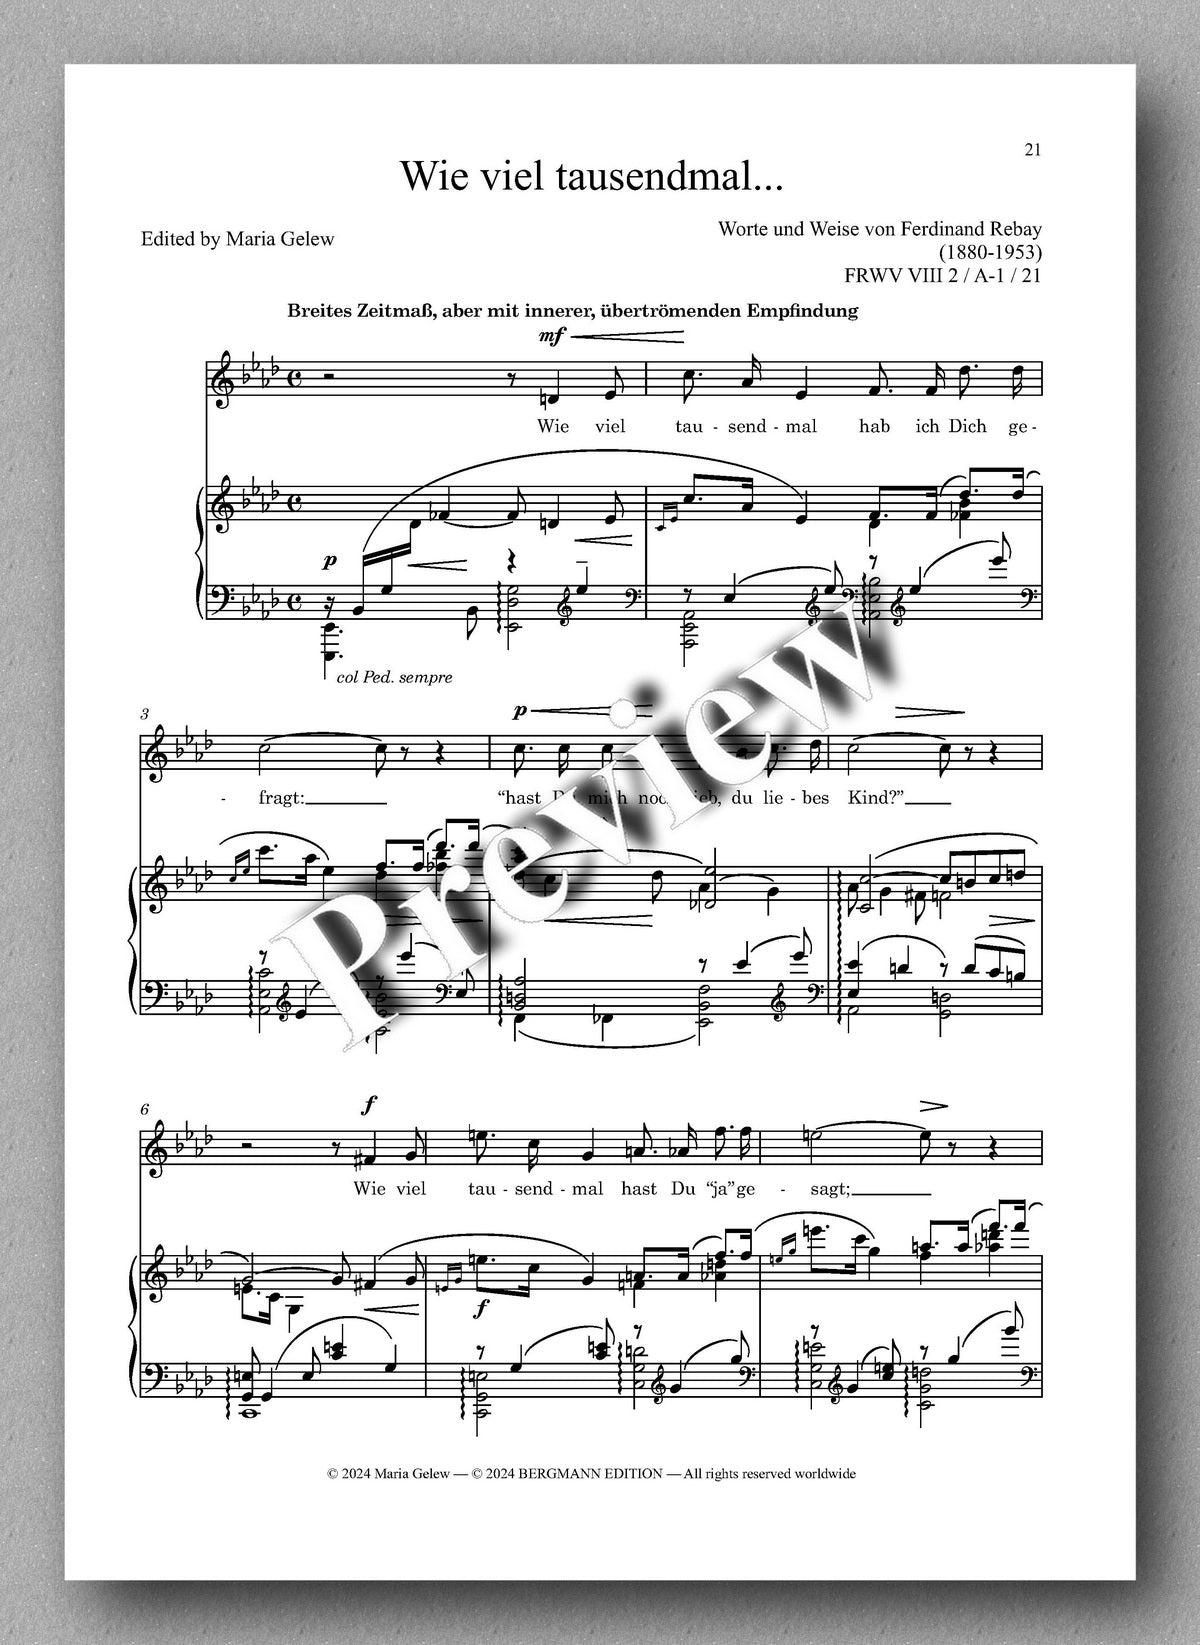 Rebay, Lieder No. 17, Lieder nach eigenen Texten - preview of the music score 3